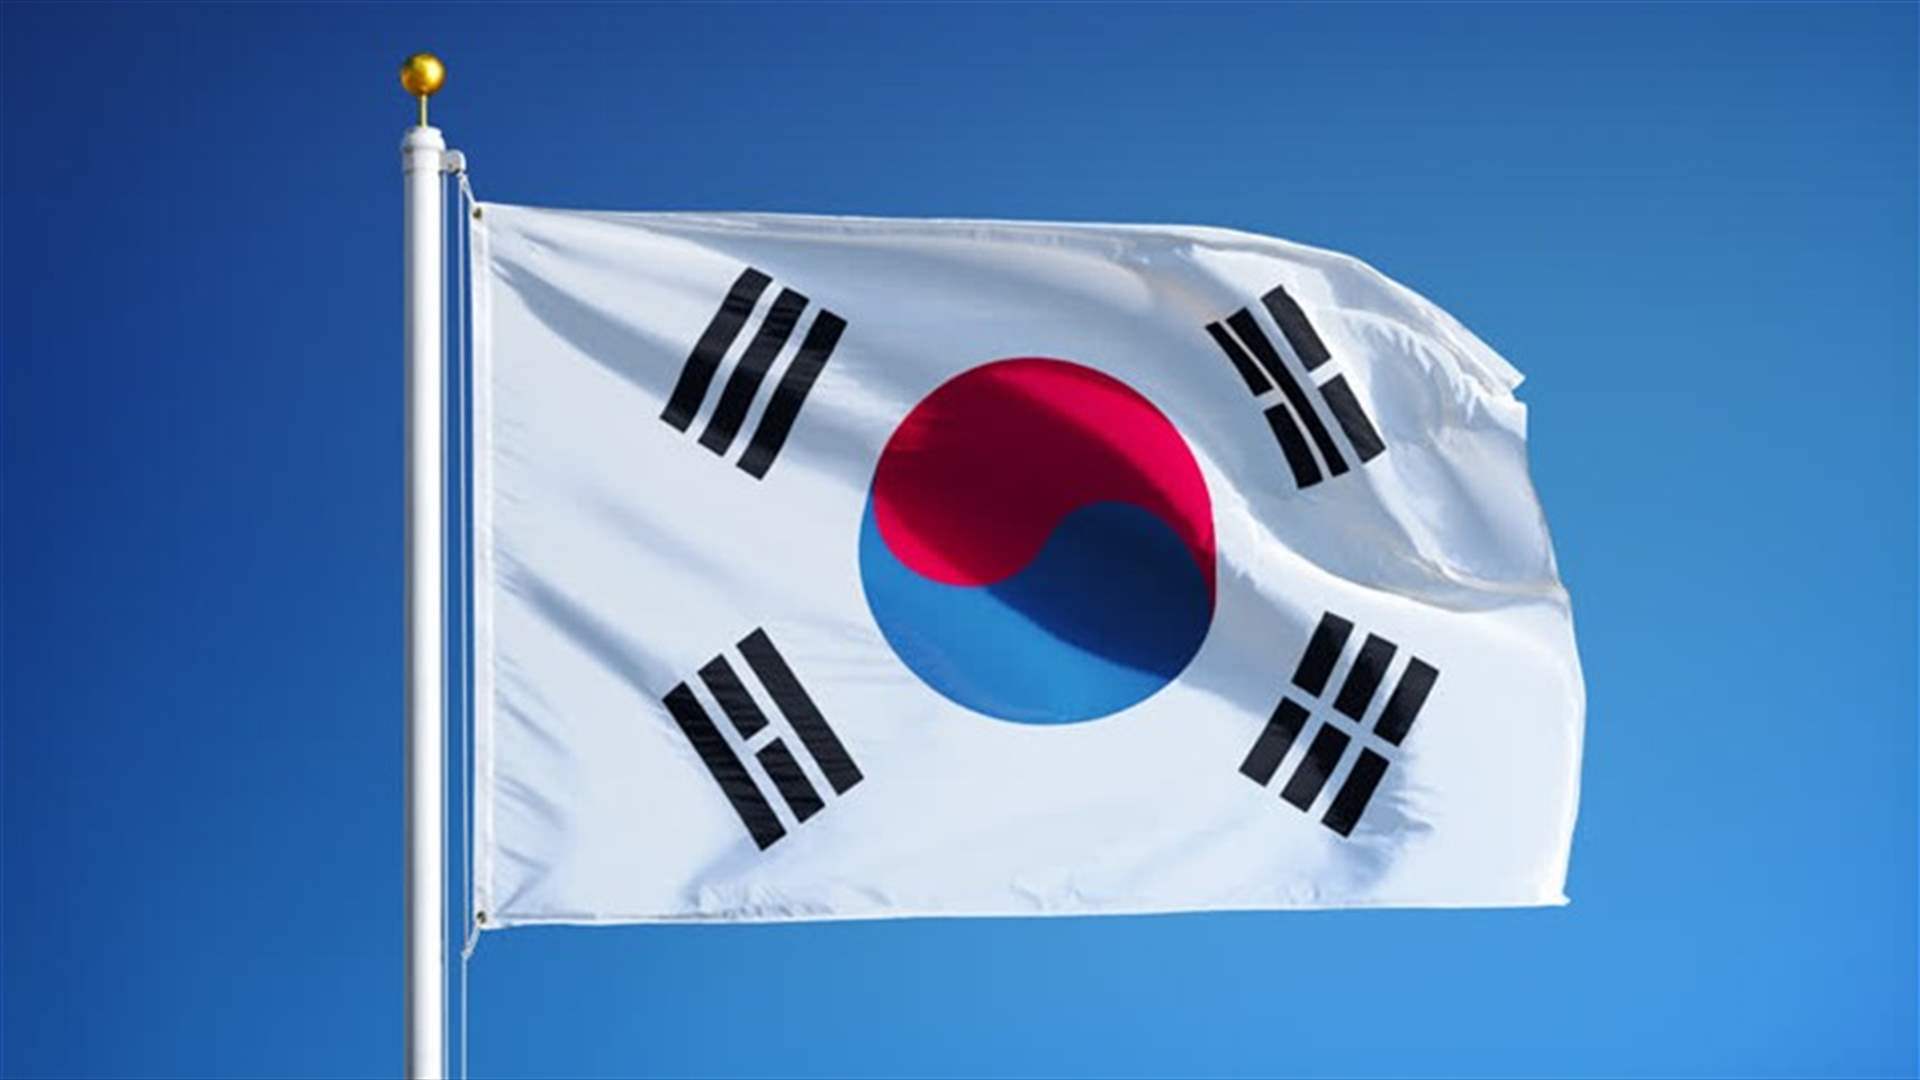 كوريا الجنوبية: محادثات مع أميركا قبل زيارة بوتين المحتملة لكوريا الشمالية